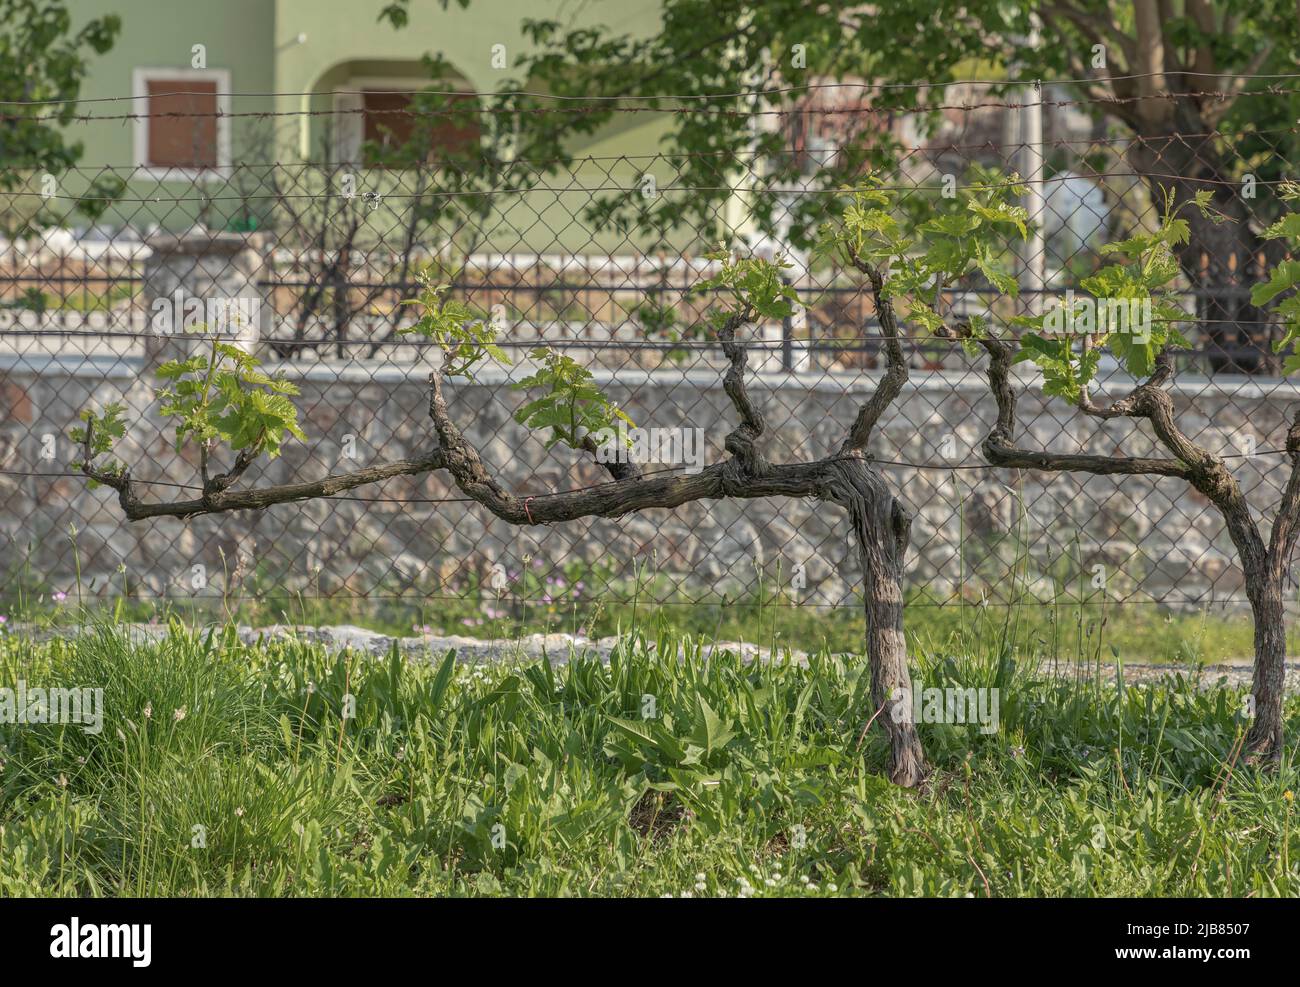 Einzelne guyot trainierte Weinrebe gegen einen Drahtzaun in der Nähe des Skadar-Sees in Montenegro Stockfoto